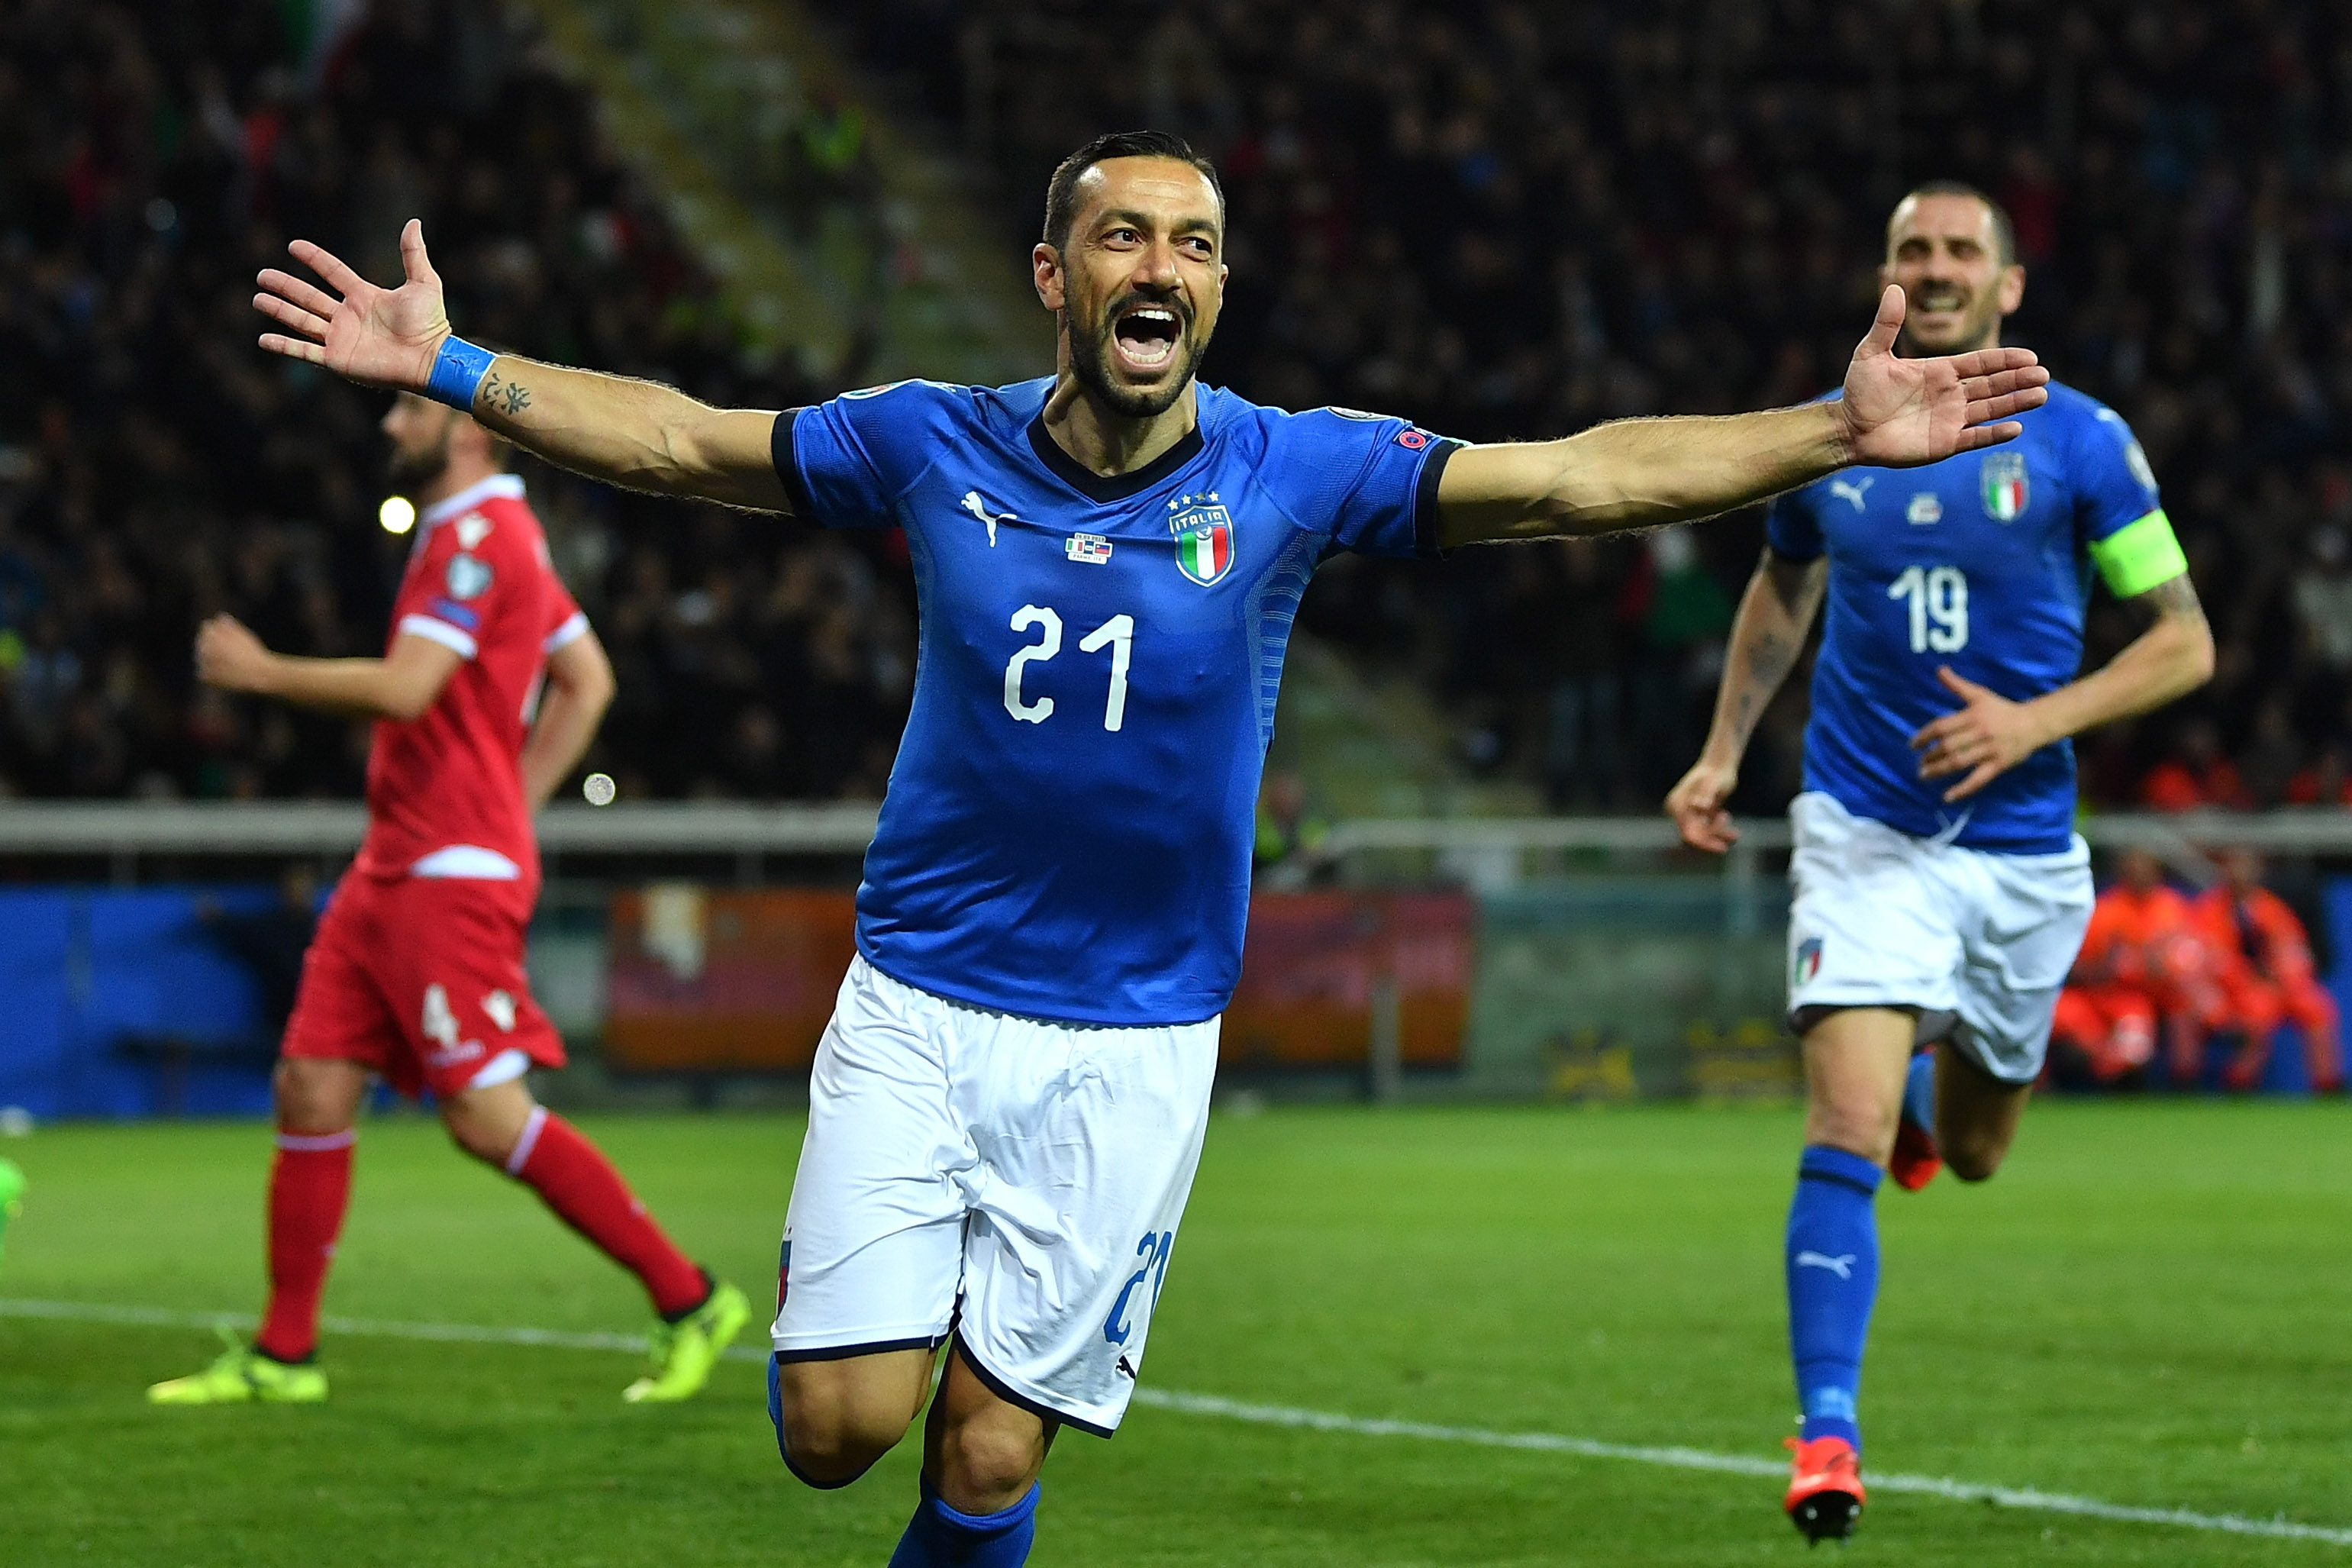 Italy v Liechtenstein - UEFA EURO 2020 Qualifier